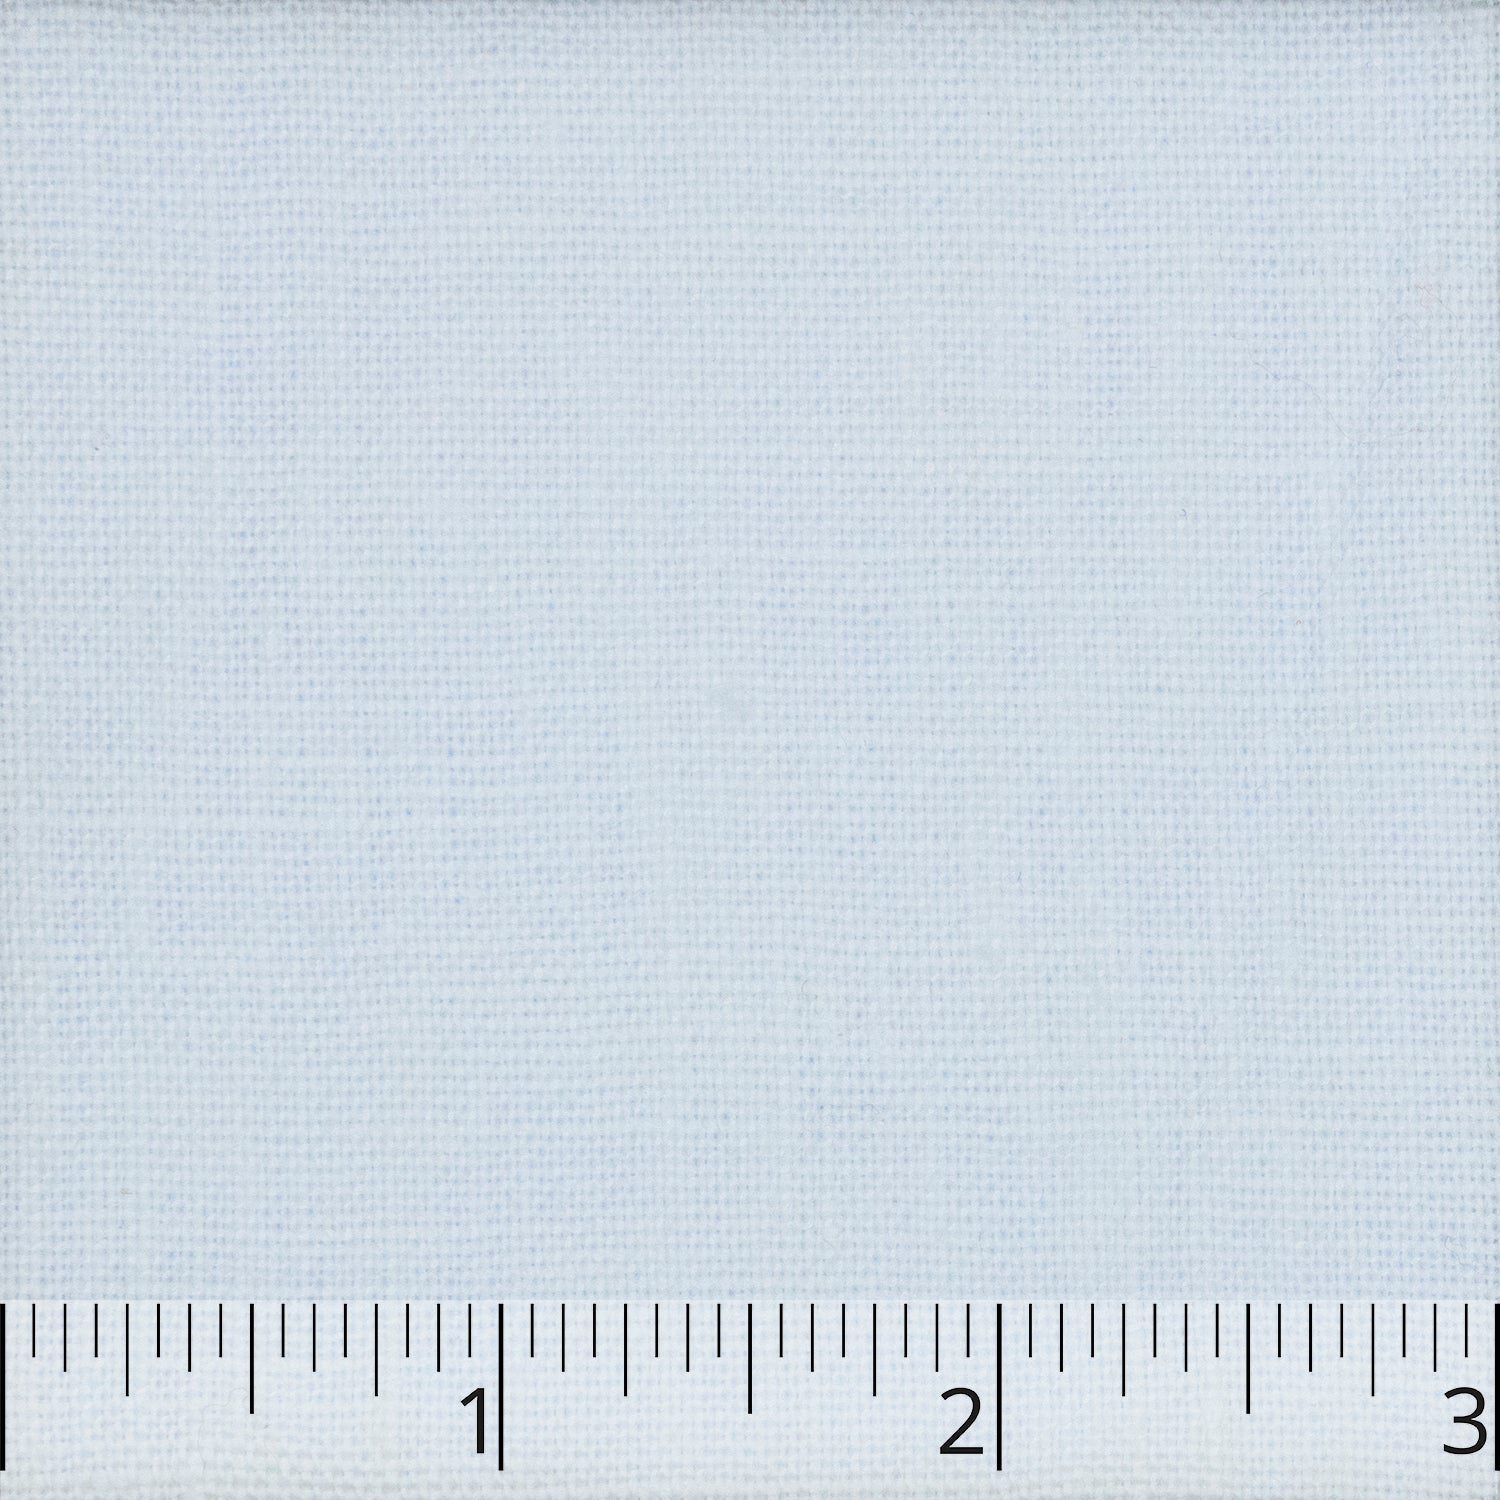 White Medium Weight Linen - $21.00 yd. - Burnley & Trowbridge Co.